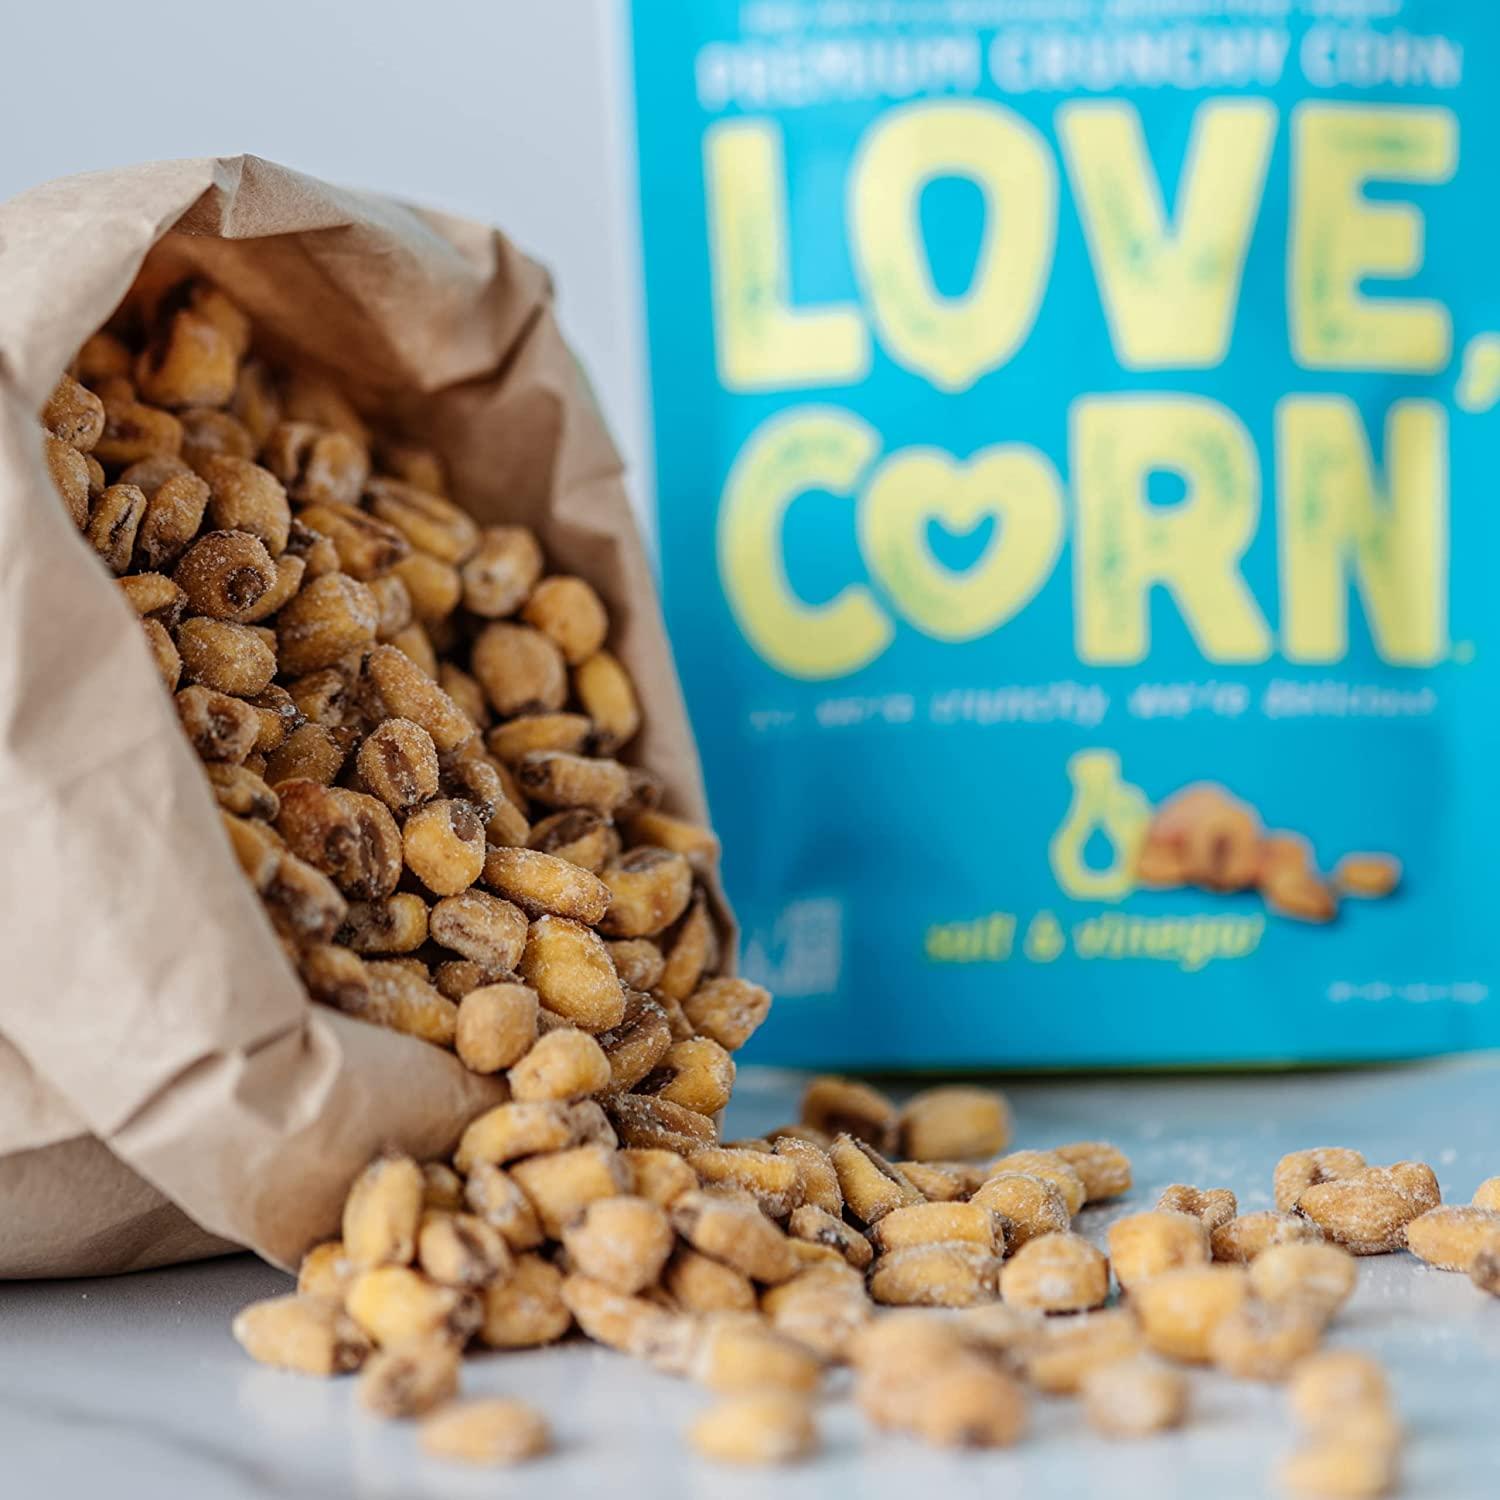 Love Corn Corn Snack, Habanero Chili - 1.6 oz